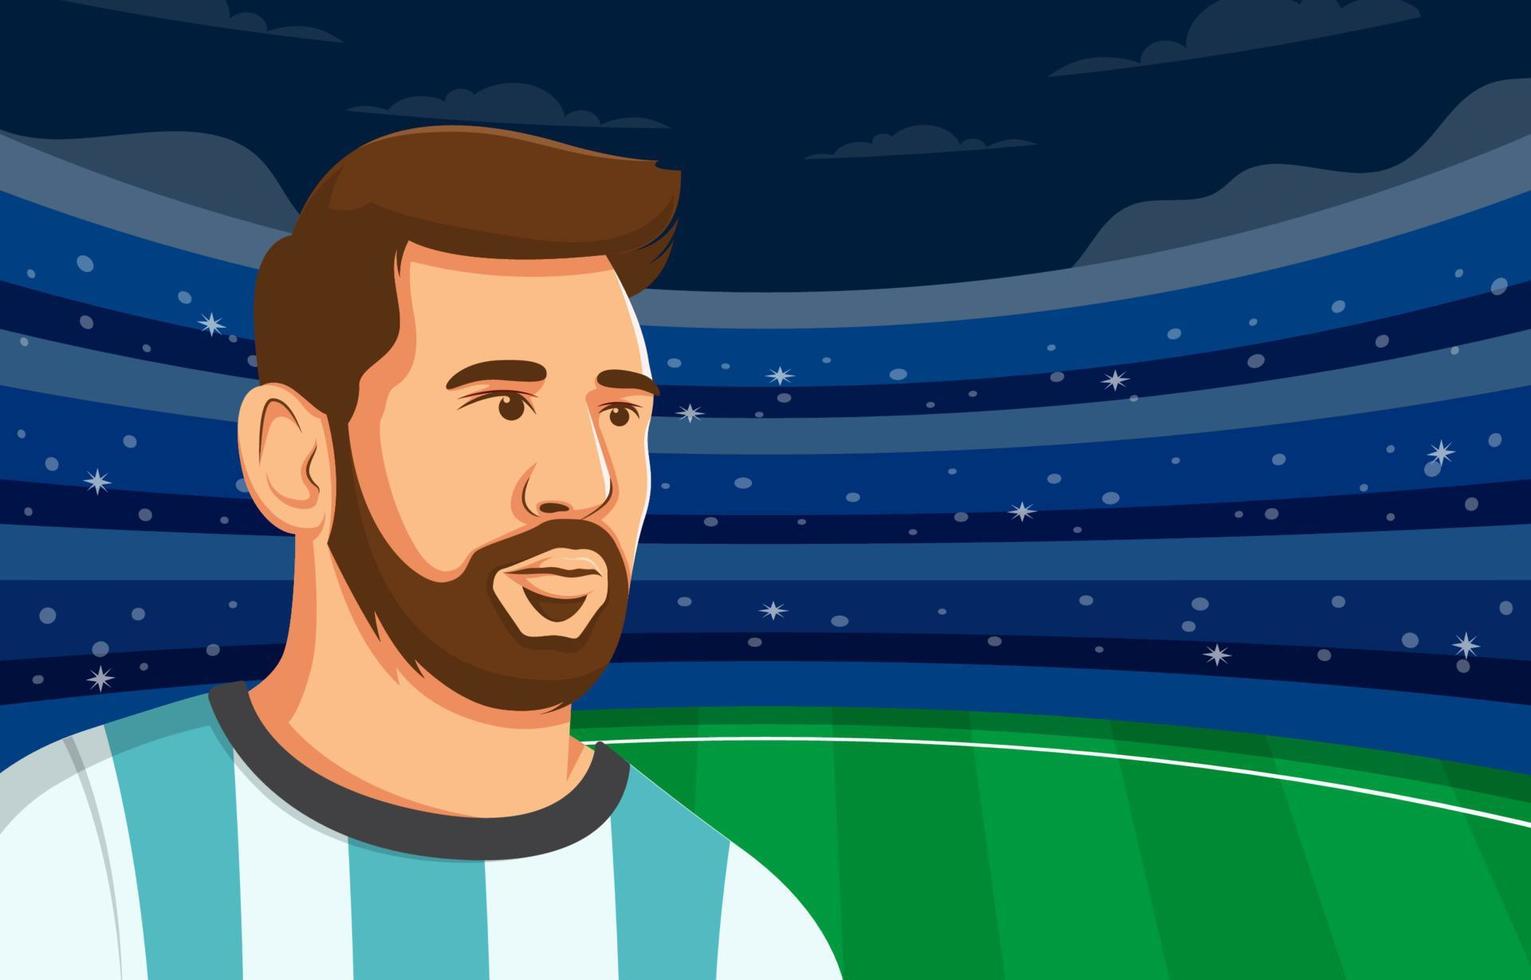 Löwe Messi im Stadion Hintergrund vektor